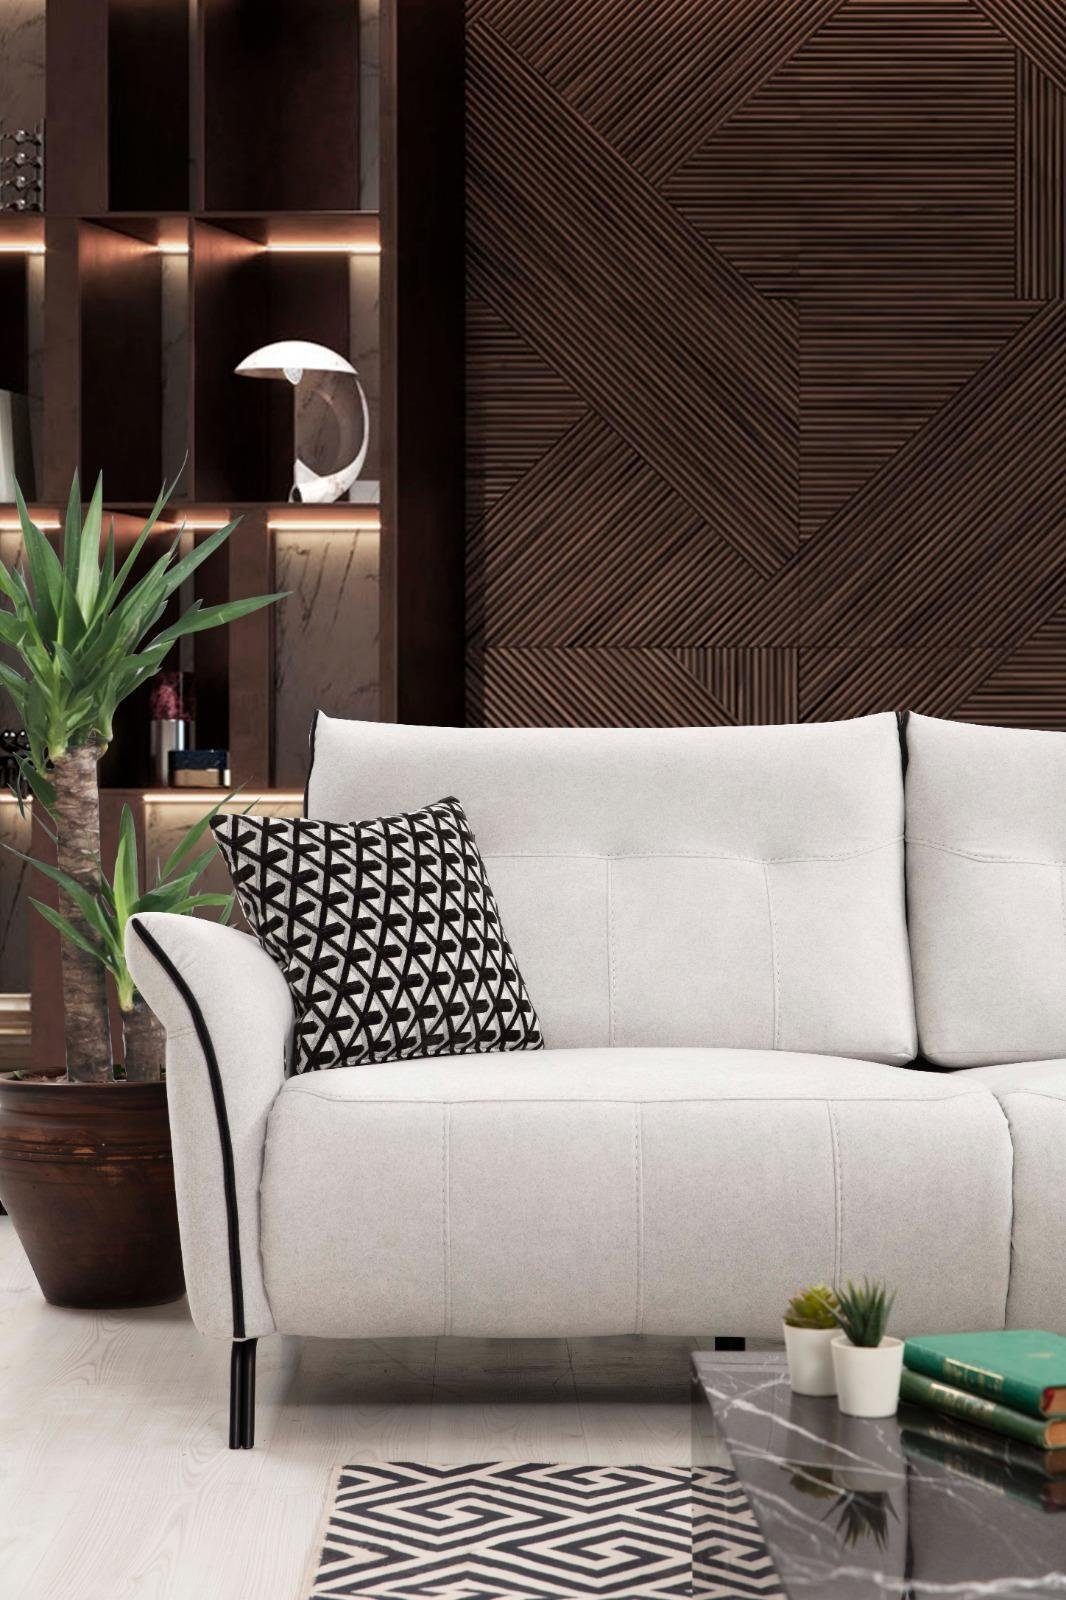 JVmoebel Ecksofa Wohnzimmer Sofa 5 Couch, Teile, Stoff Design Textil Made Luxus in Europa Modern L-Form